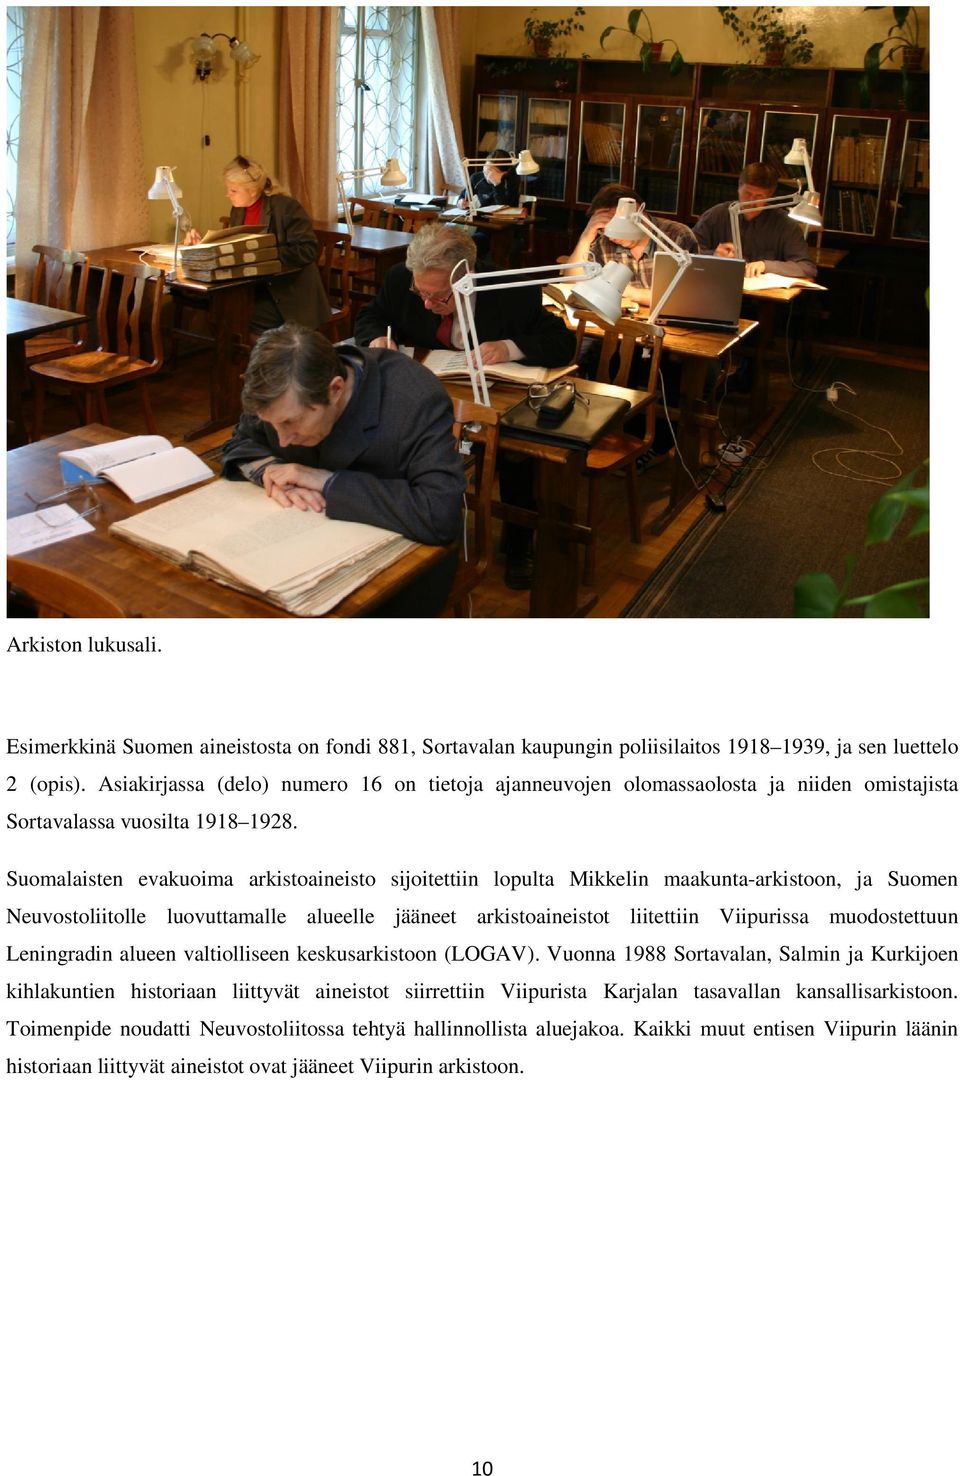 Suomalaisten evakuoima arkistoaineisto sijoitettiin lopulta Mikkelin maakunta-arkistoon, ja Suomen Neuvostoliitolle luovuttamalle alueelle jääneet arkistoaineistot liitettiin Viipurissa muodostettuun